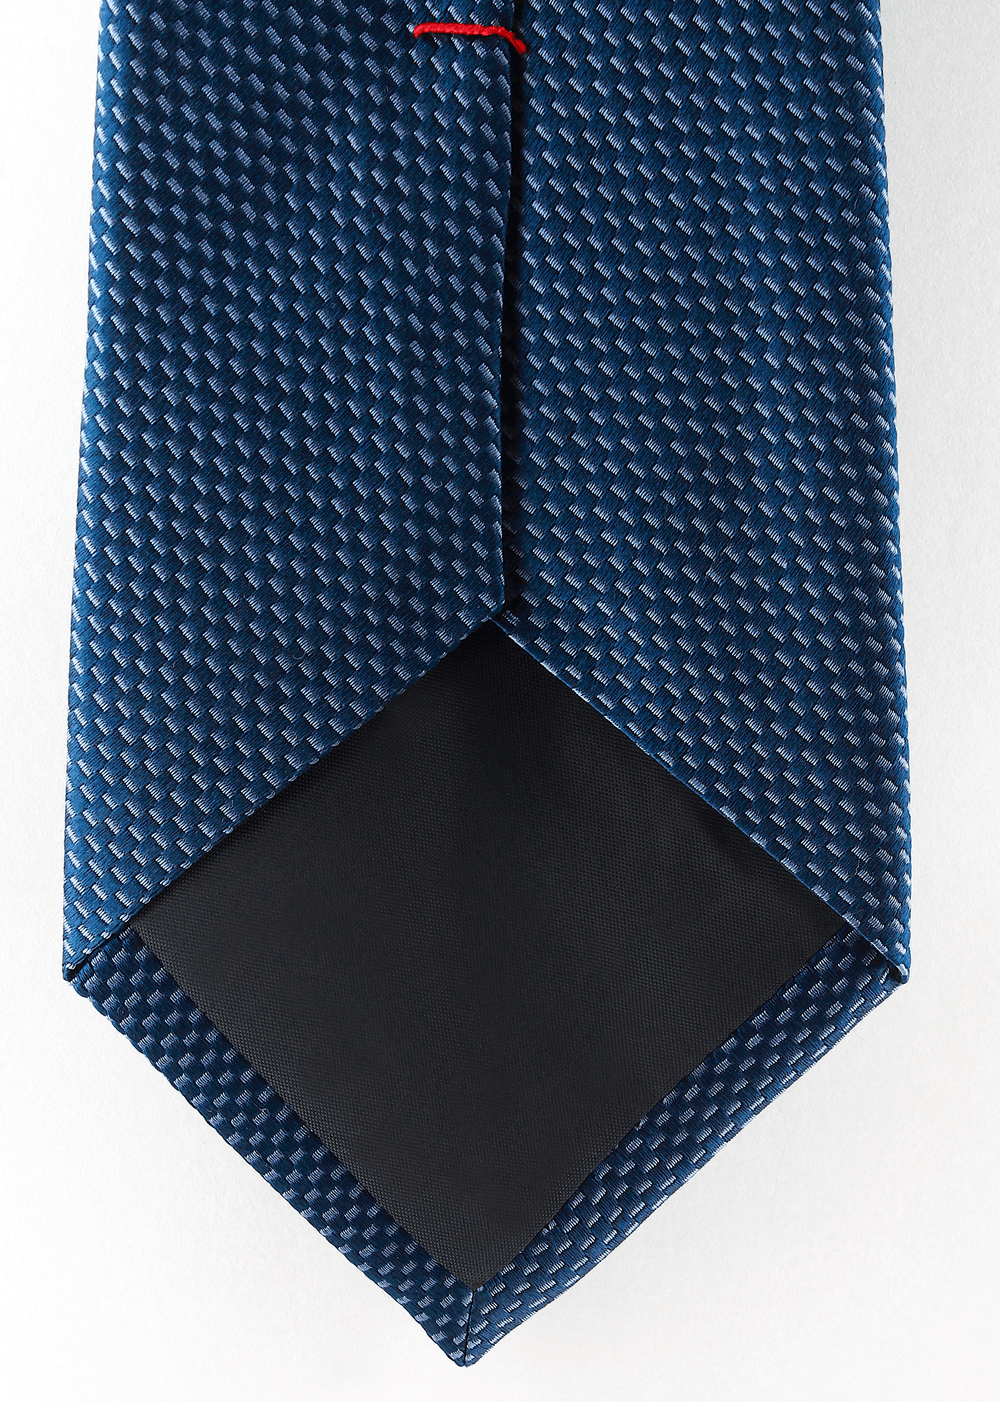 Cravate en soie tissée bleue à motif gris | Cotton Park